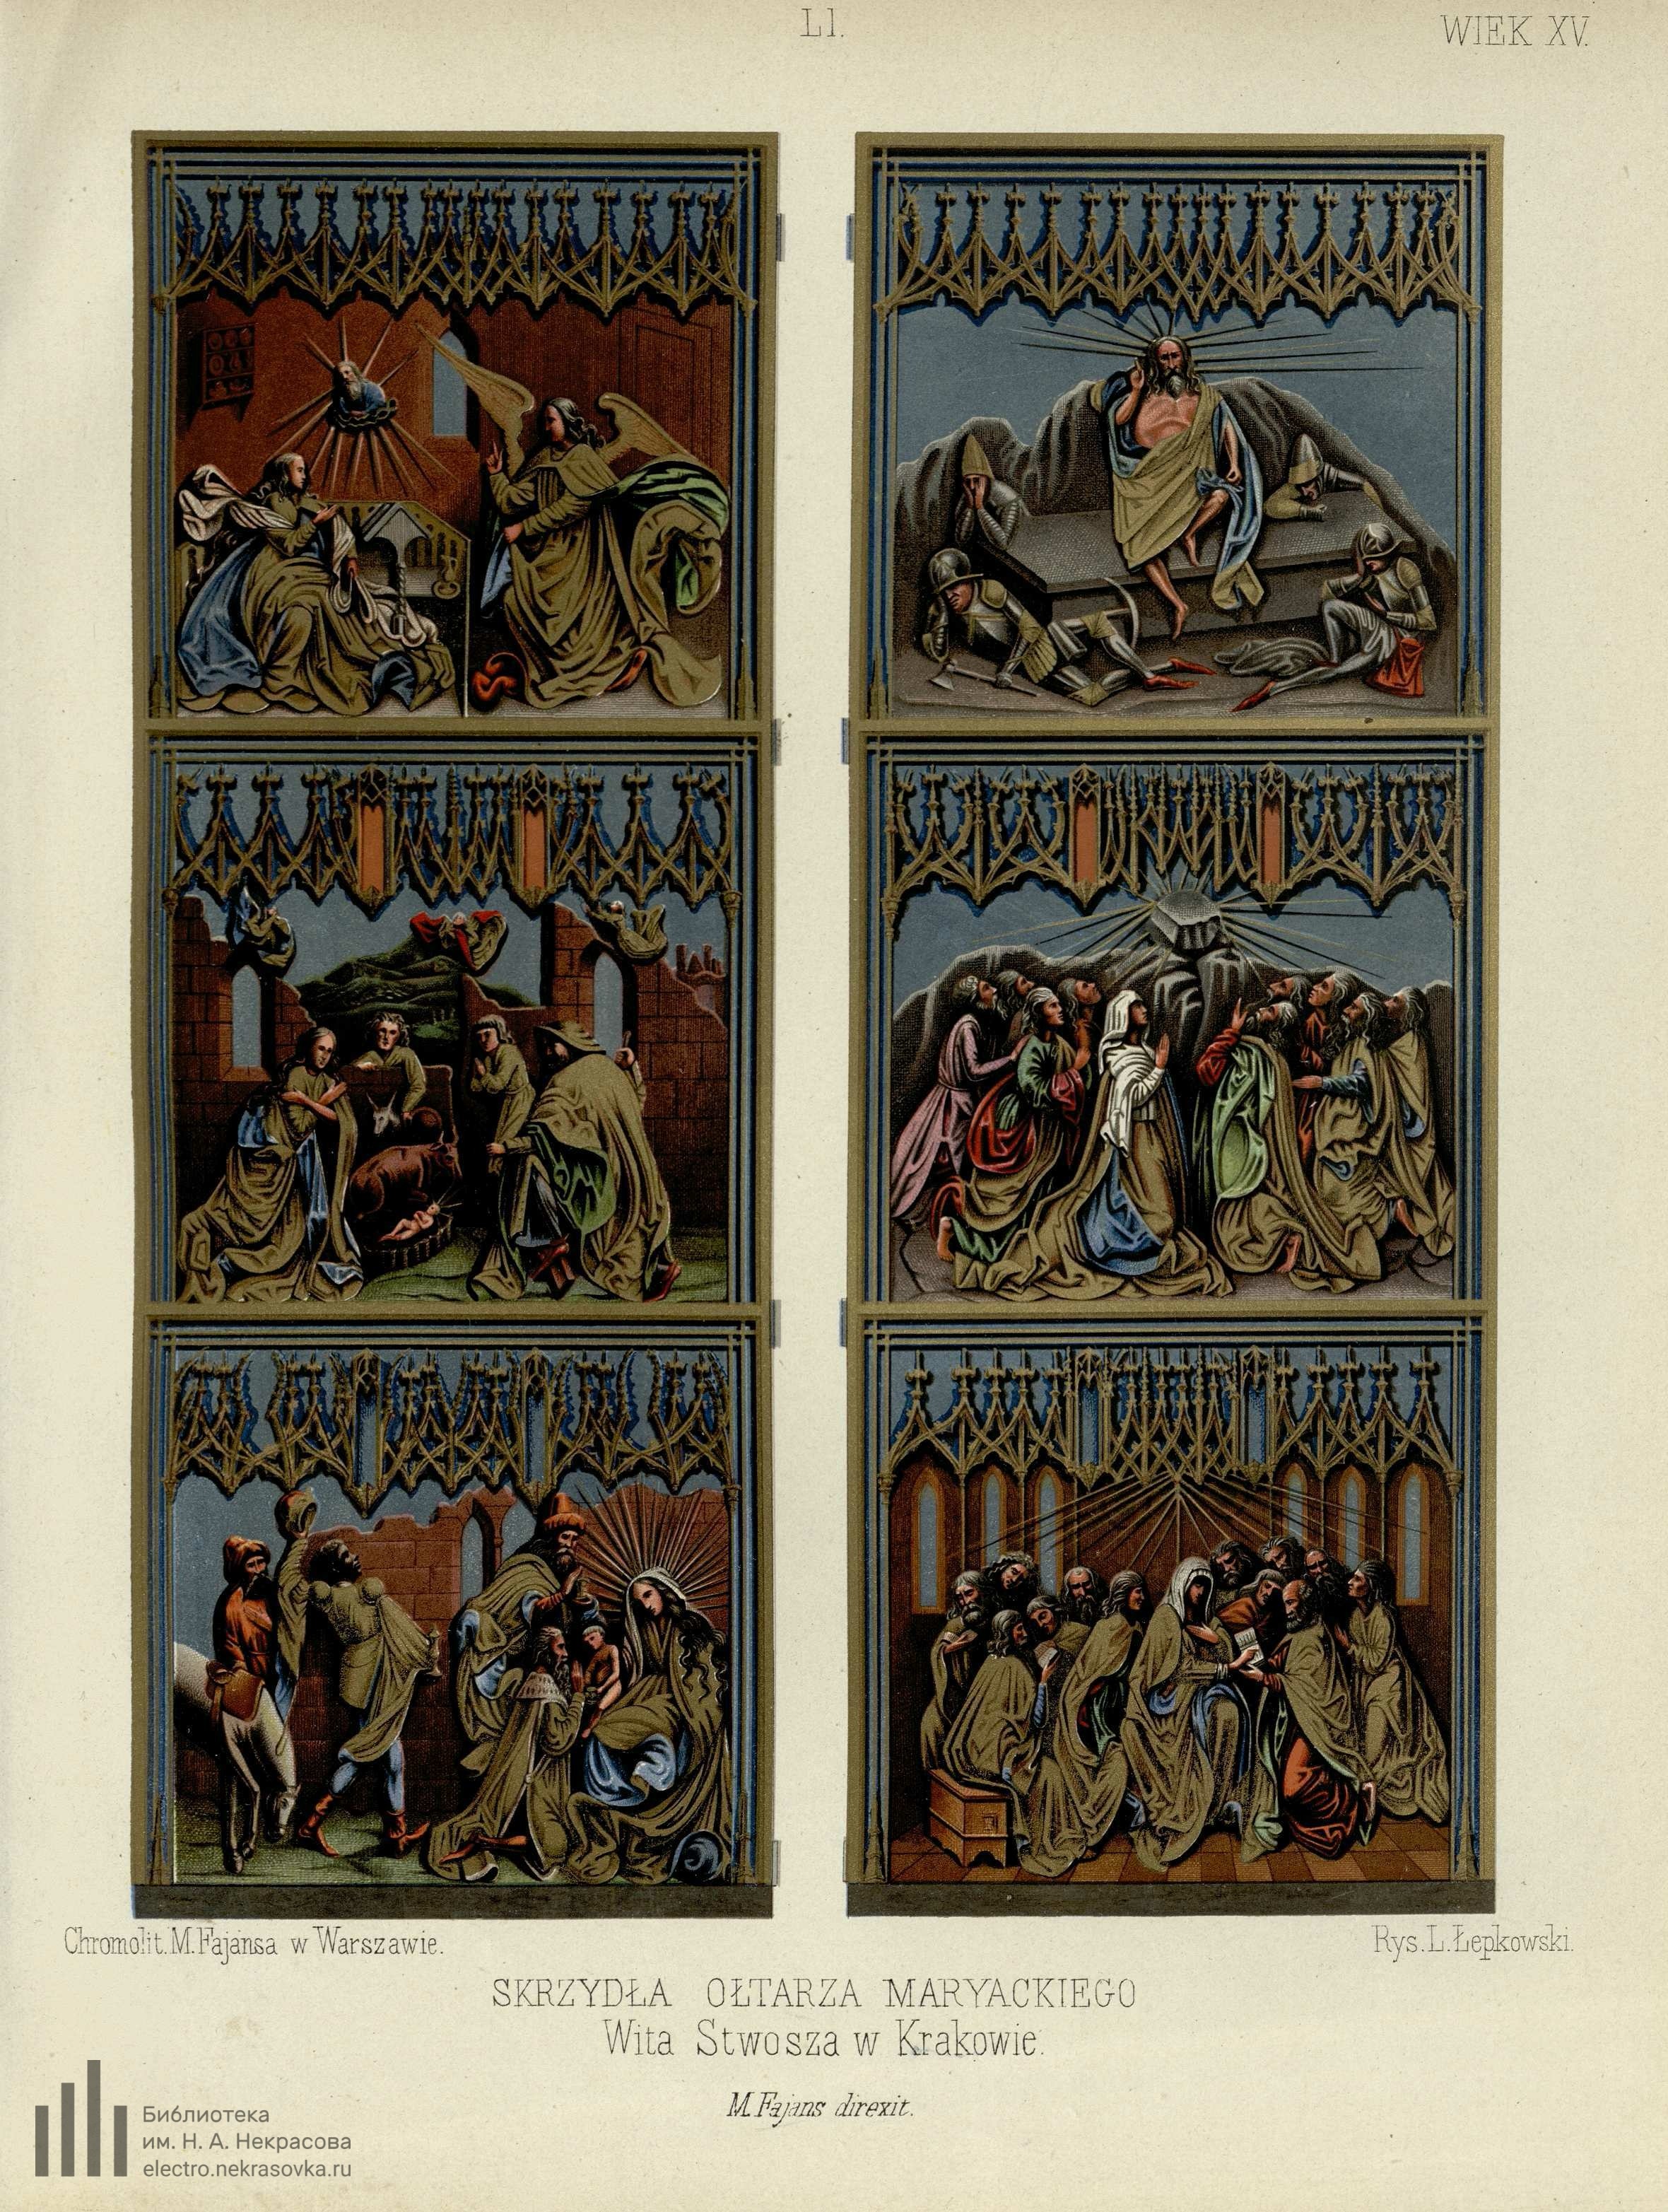 Wzory sztuki średniowiecznéj i z epoki odrodzenia po koniec wieku XVII w dawnej Polsce